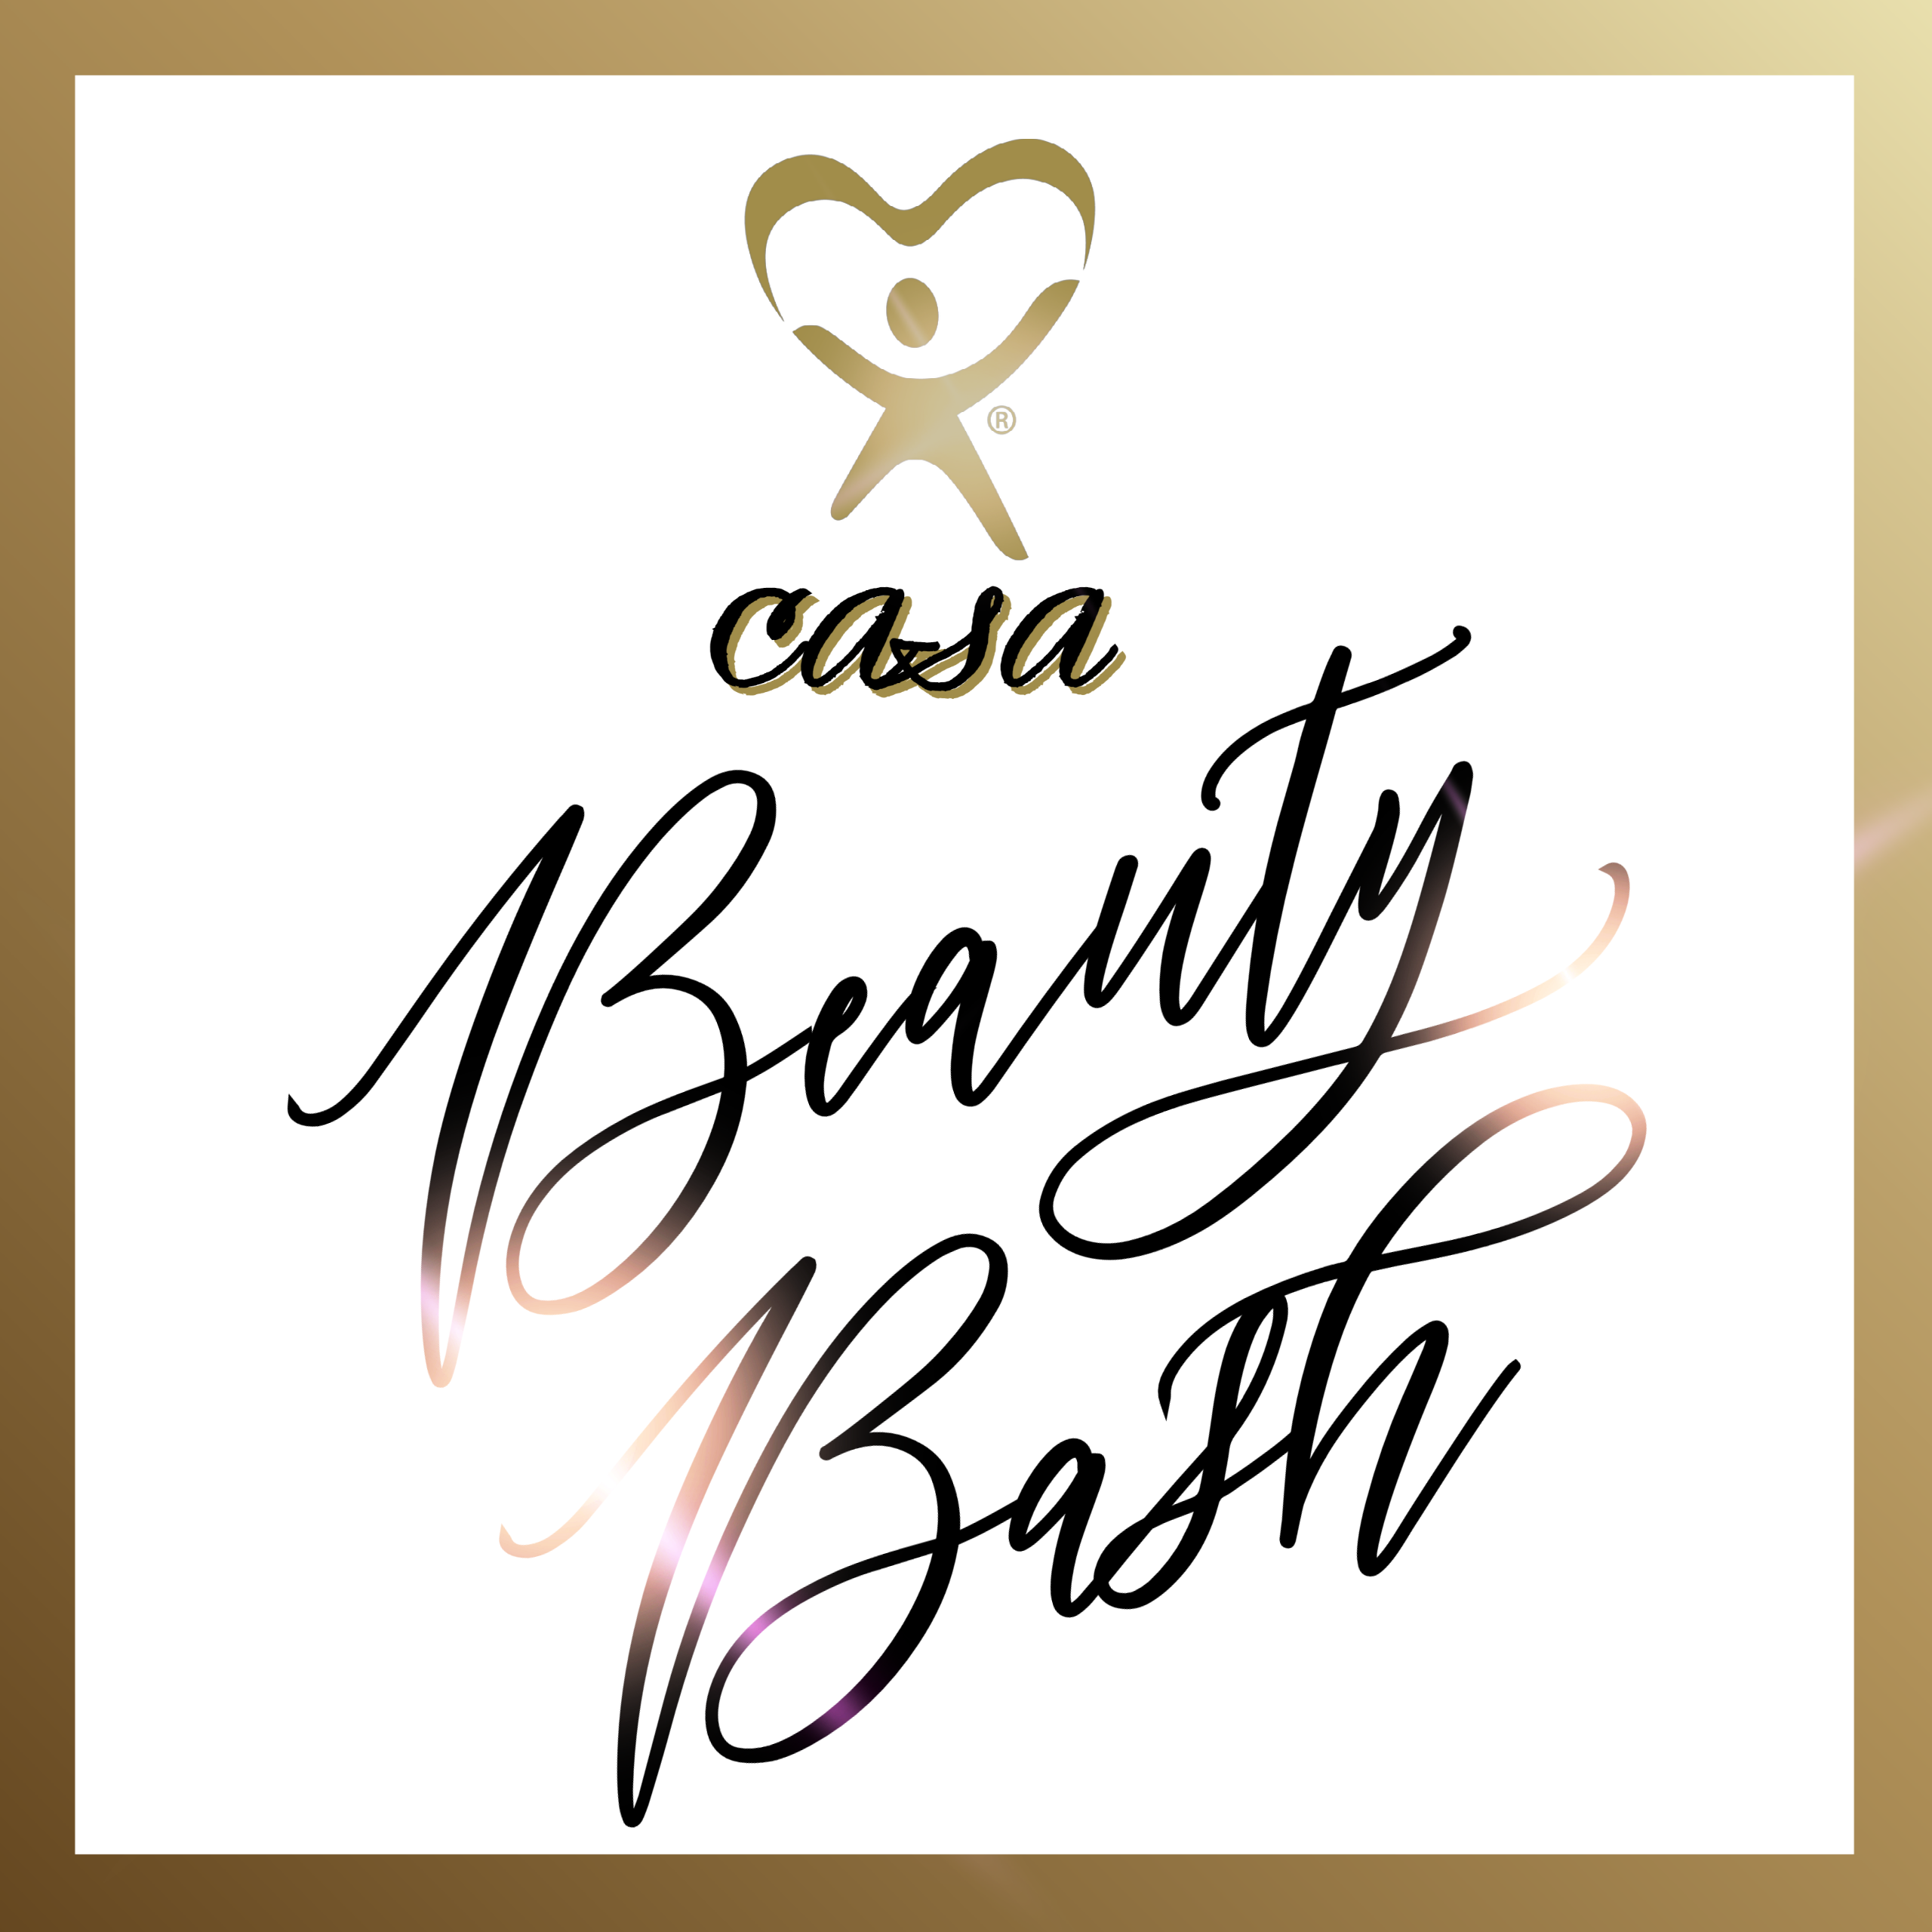 Beauty Bash - CASA Fresno Madera